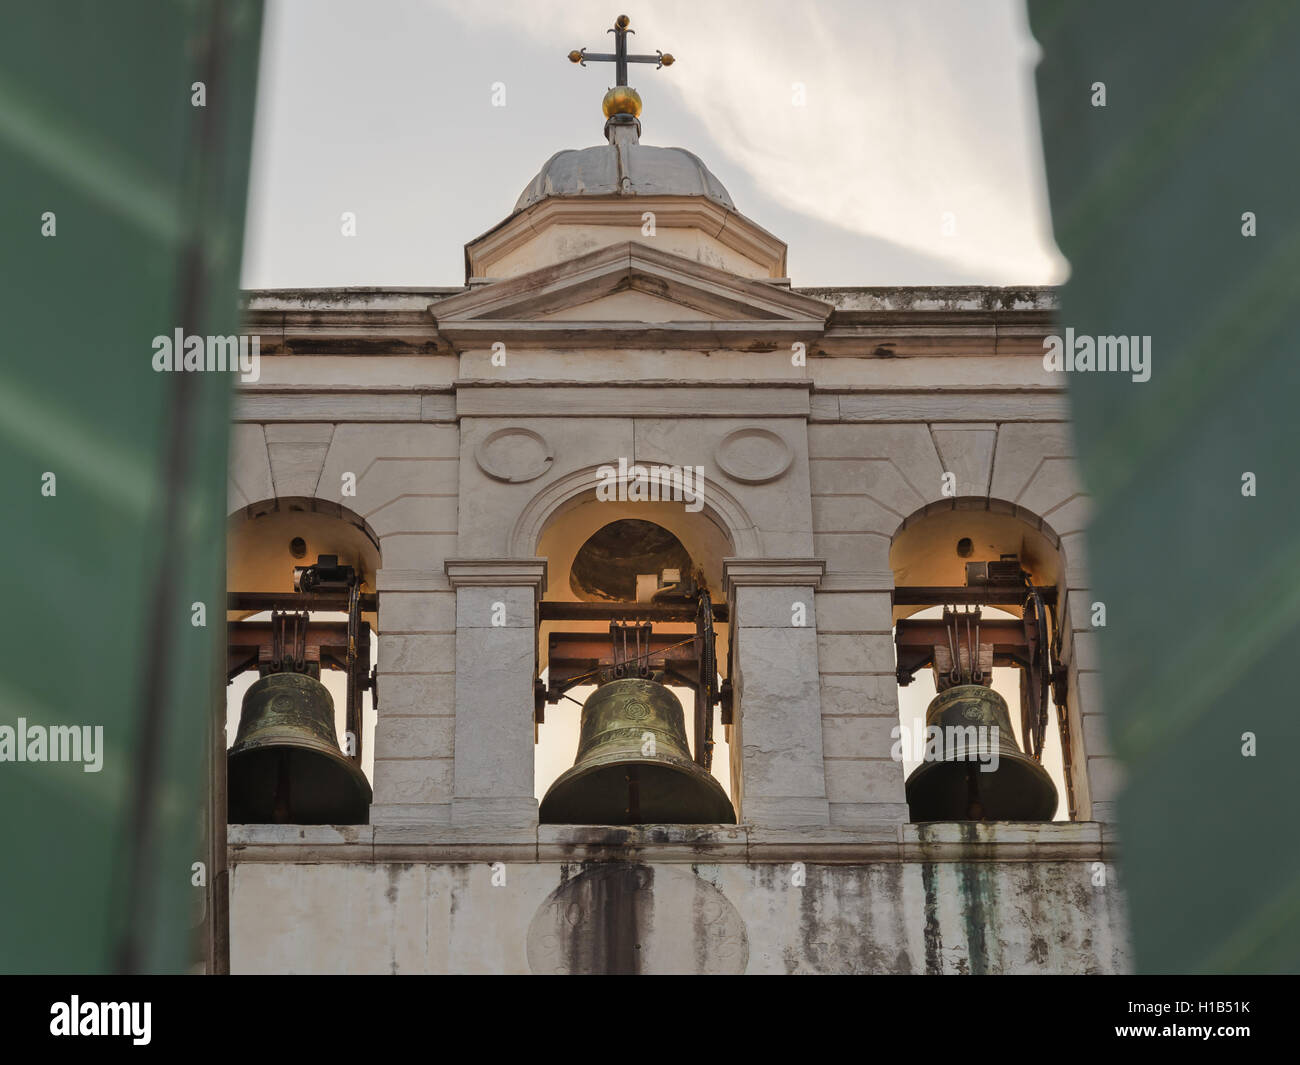 Trois cloches dans le Vieux clocher de l'église, Venise, Italie, vu à travers la fenêtre ouverte Banque D'Images